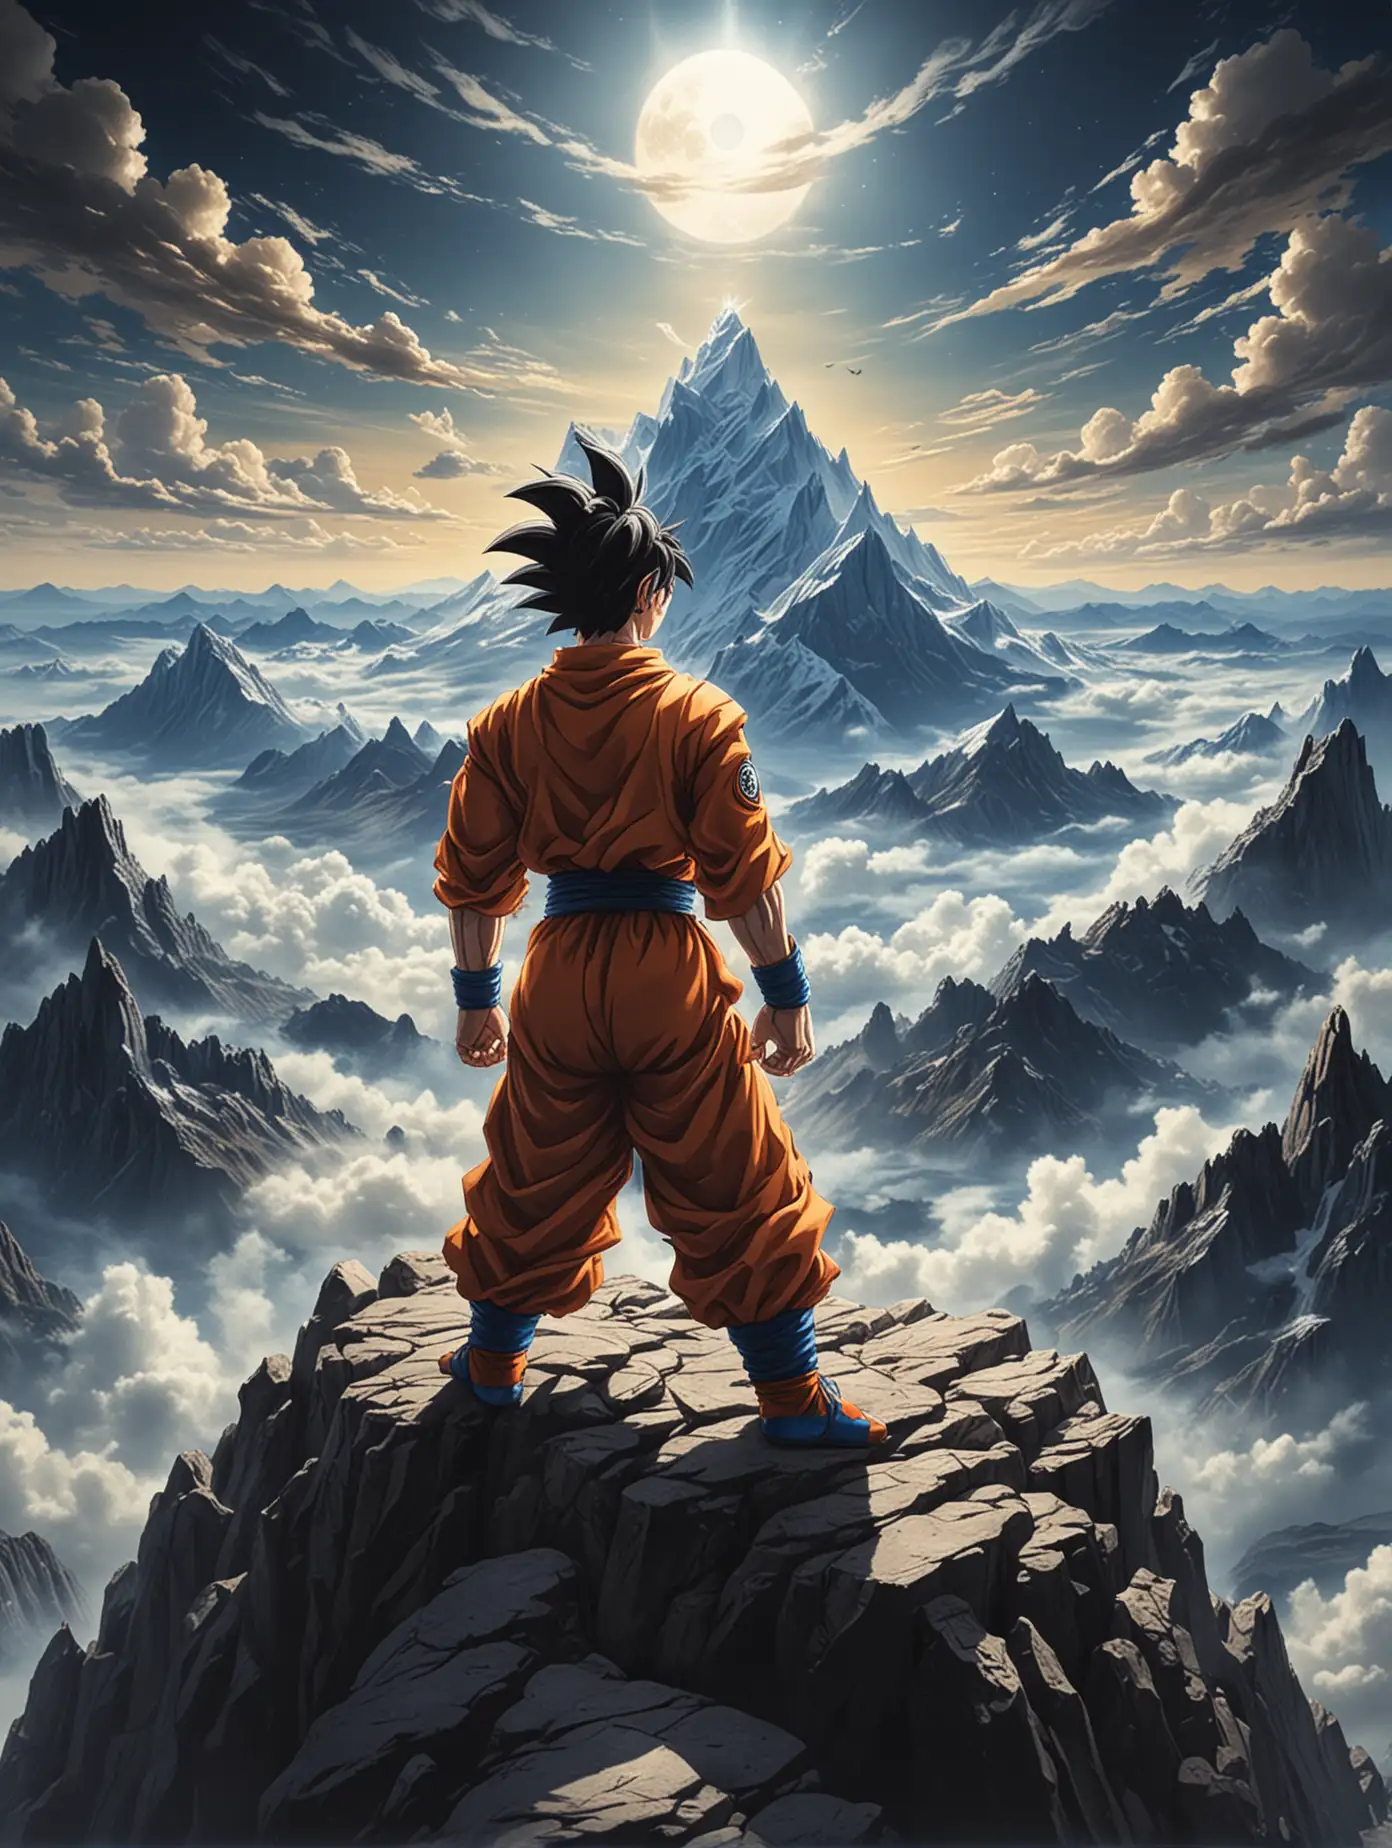 Goku is meditating on top of Mount